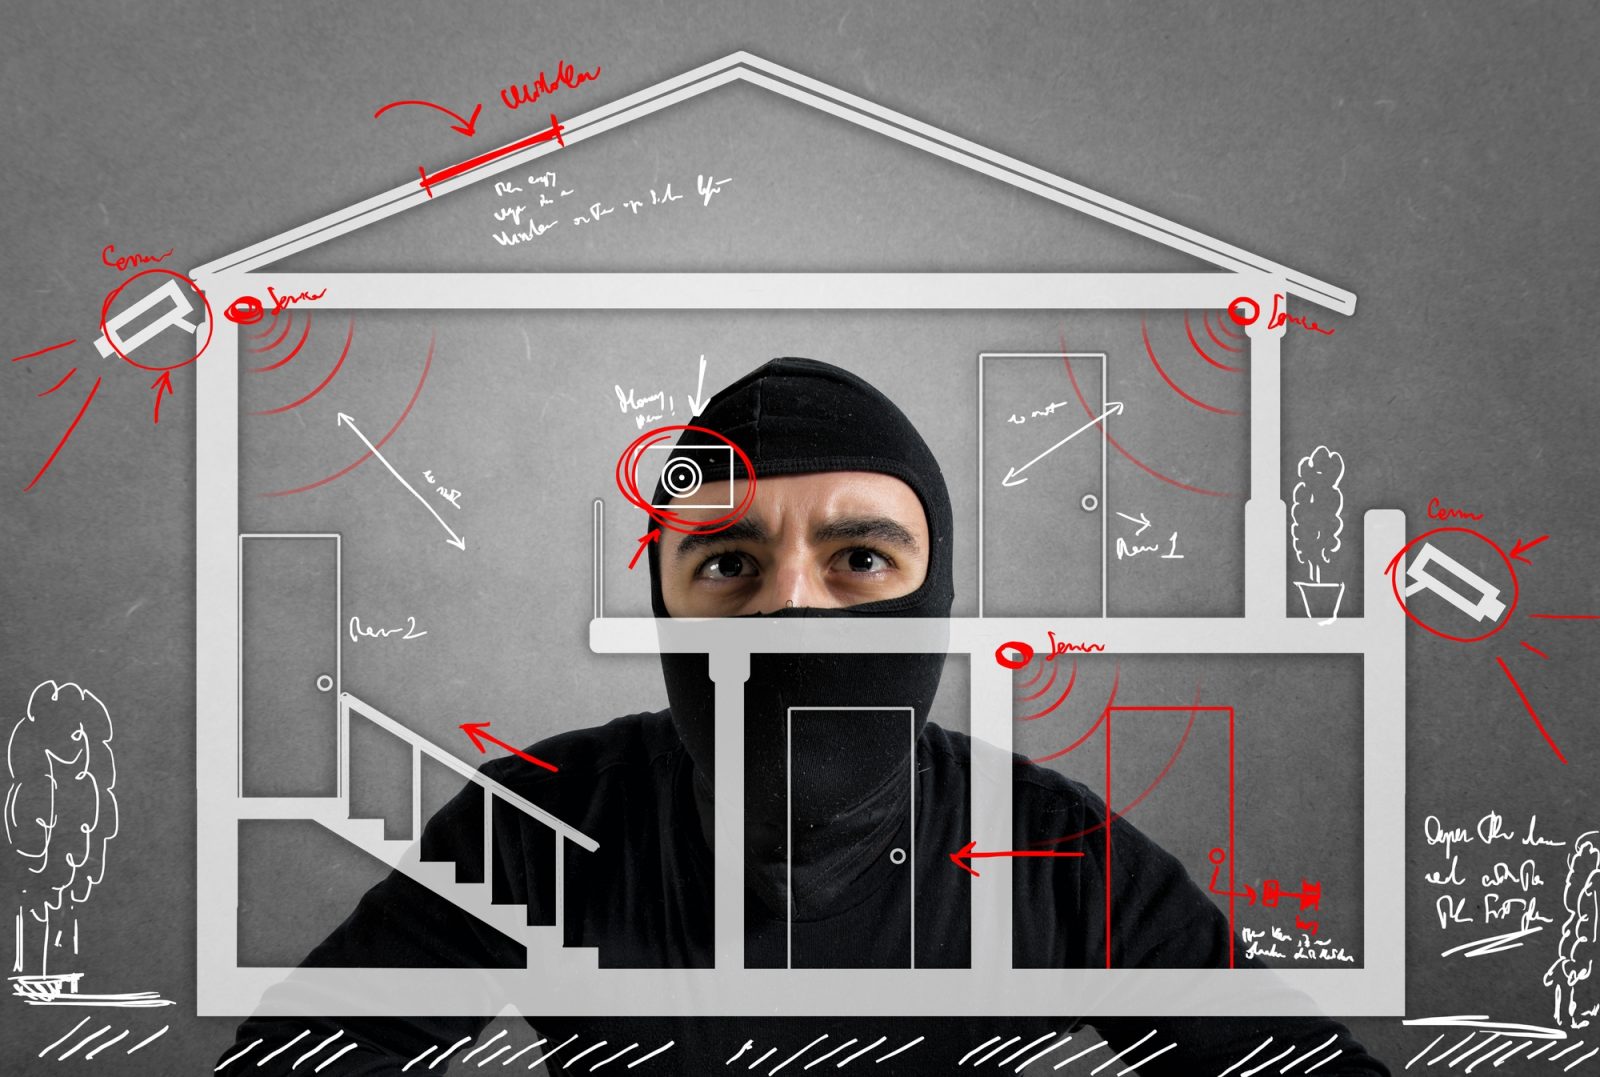 5 conseils pour éviter les intrusions à domicile